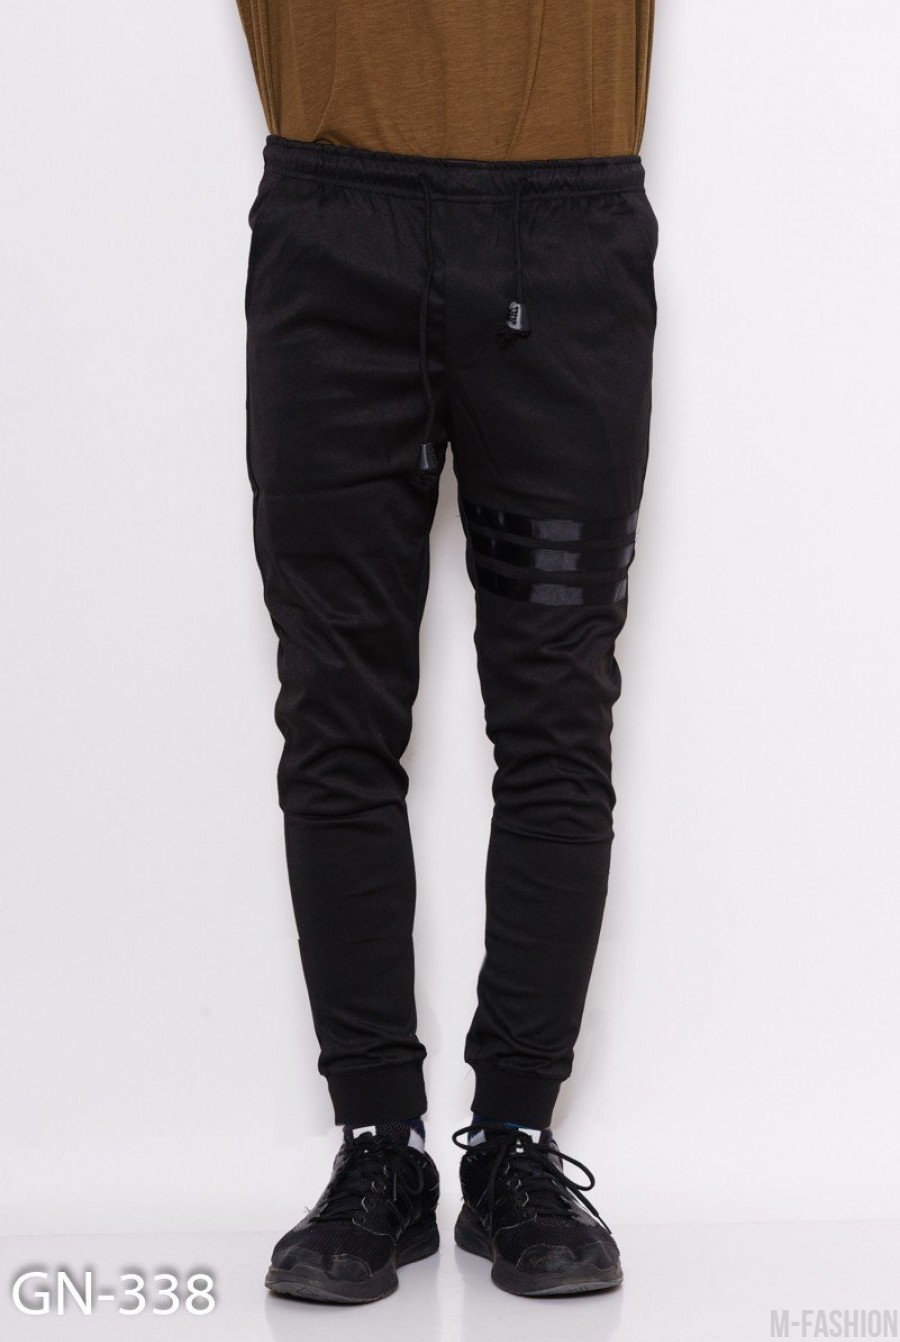 Черные спортивные штаны на манжетах с полосатым декором - Фото 1